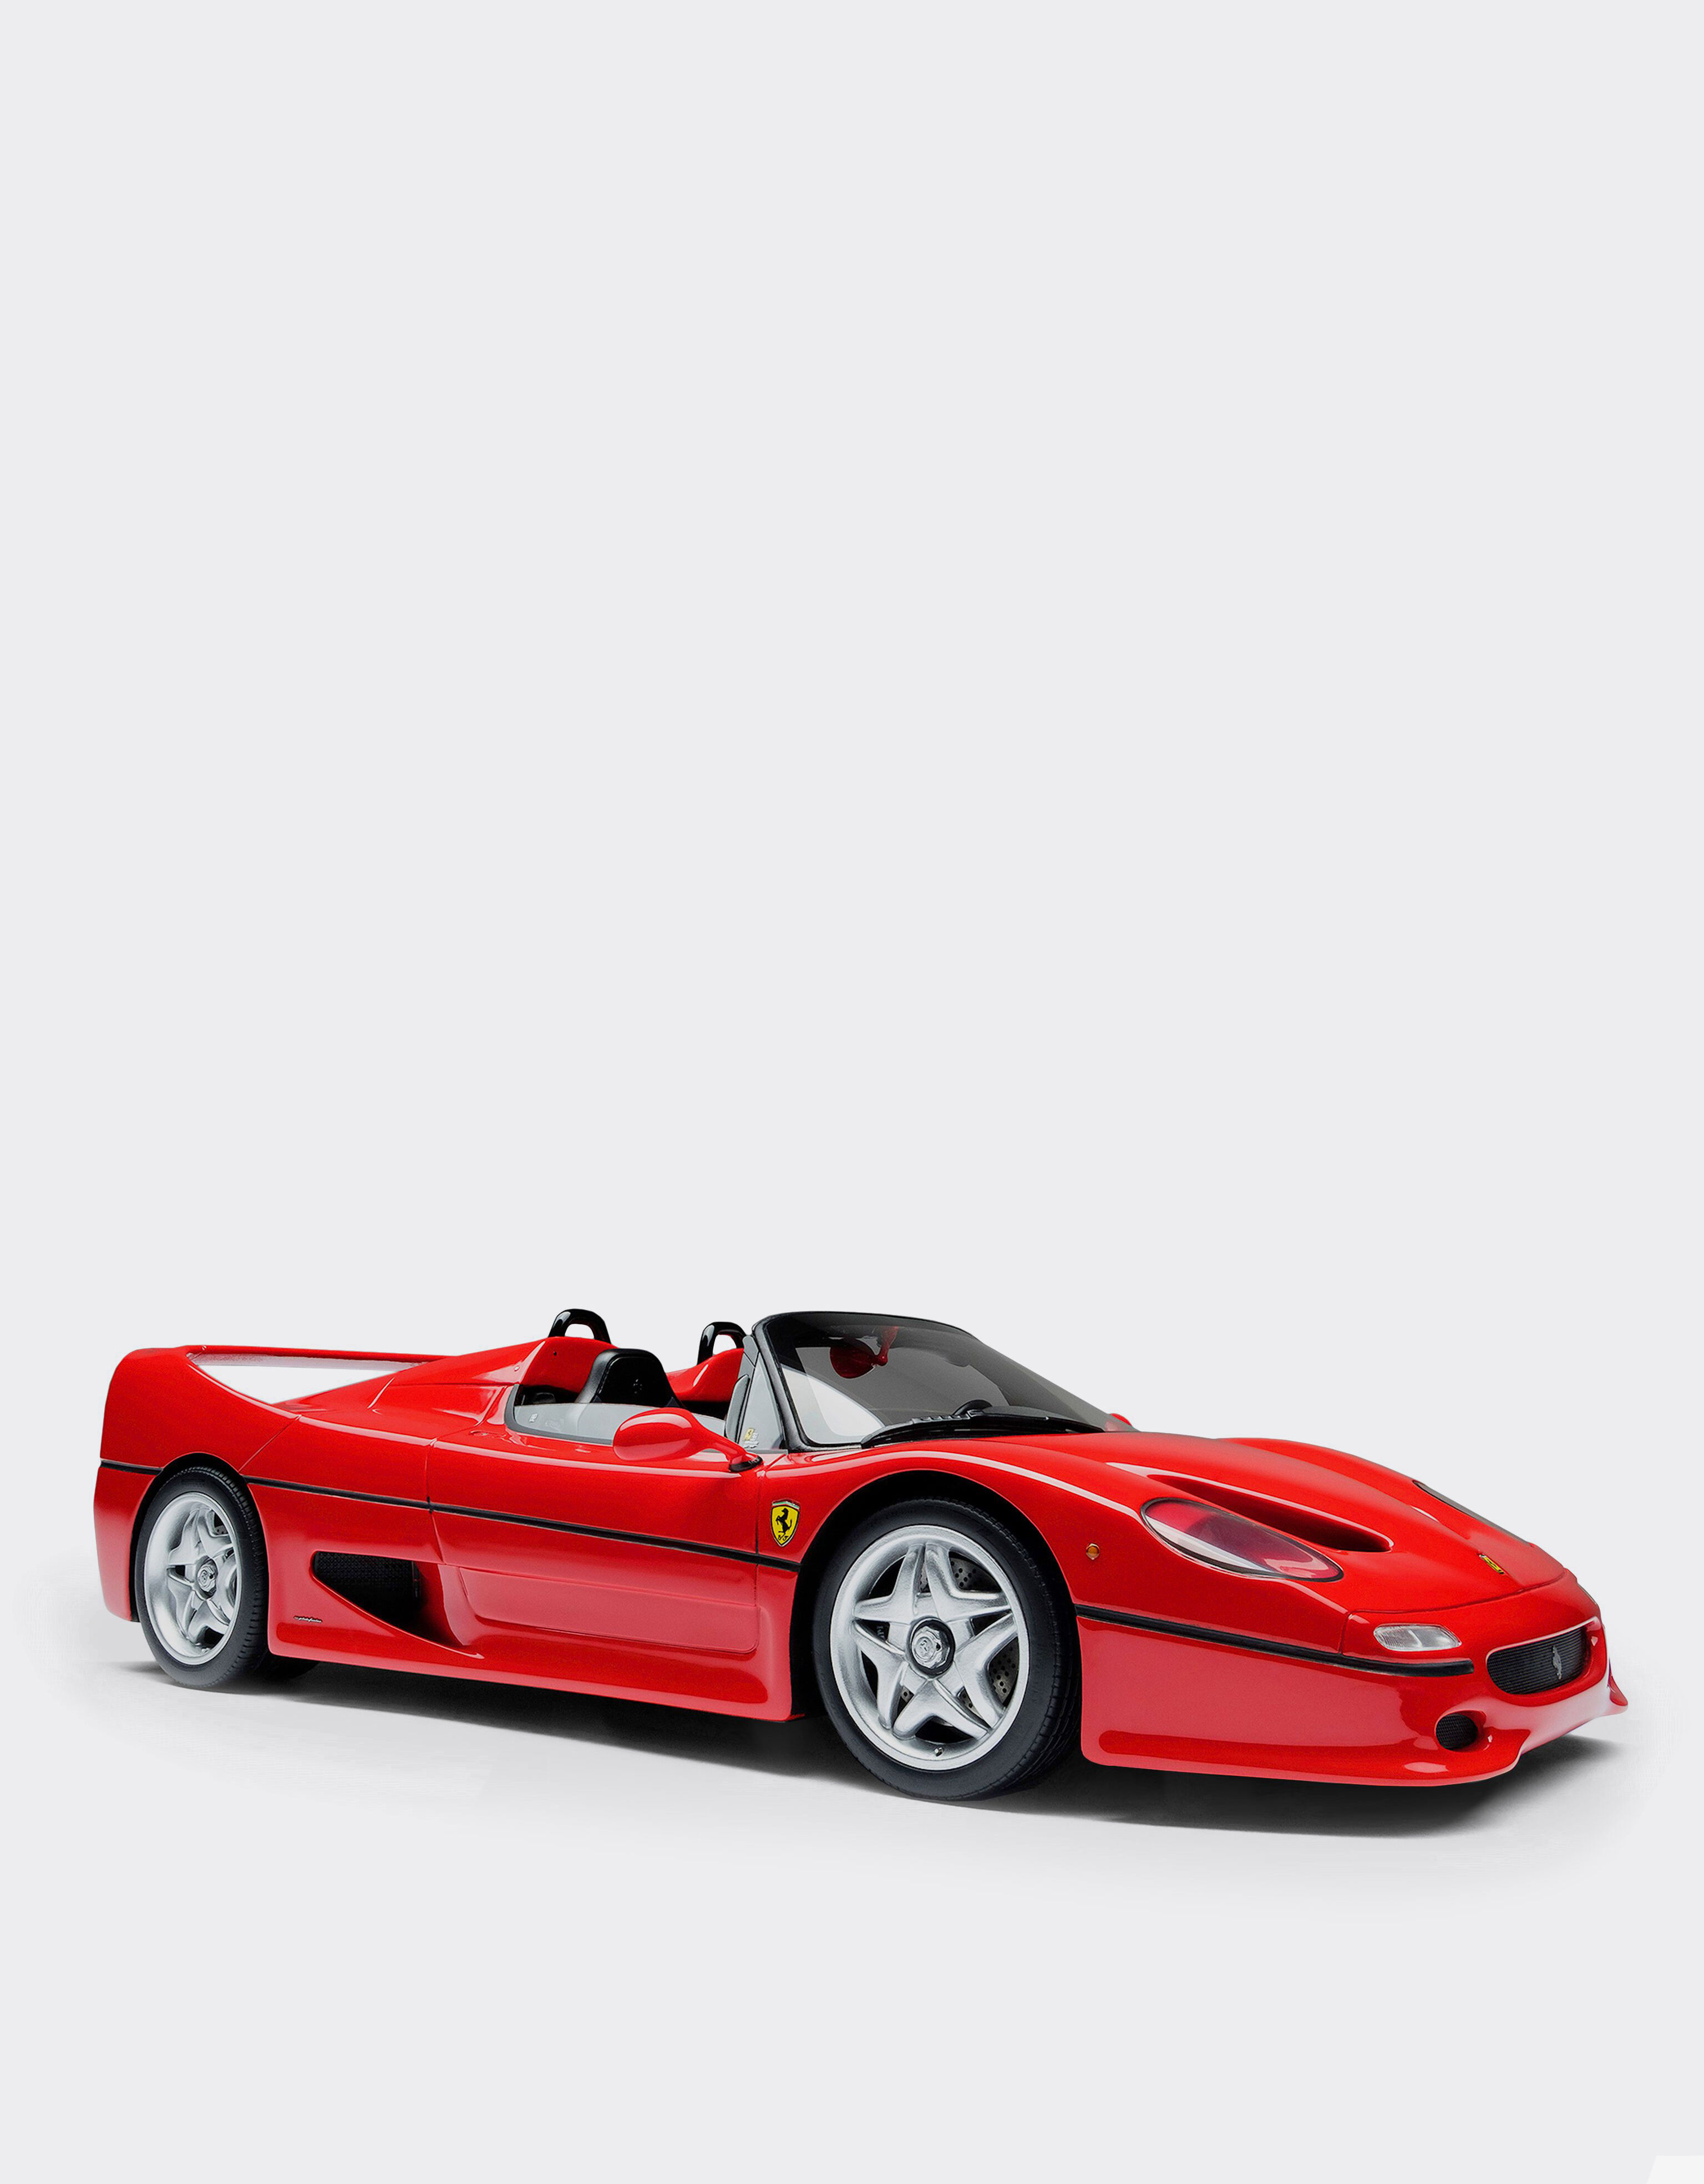 Ferrari Ferrari F50 model in 1:18 scale Red L7582f